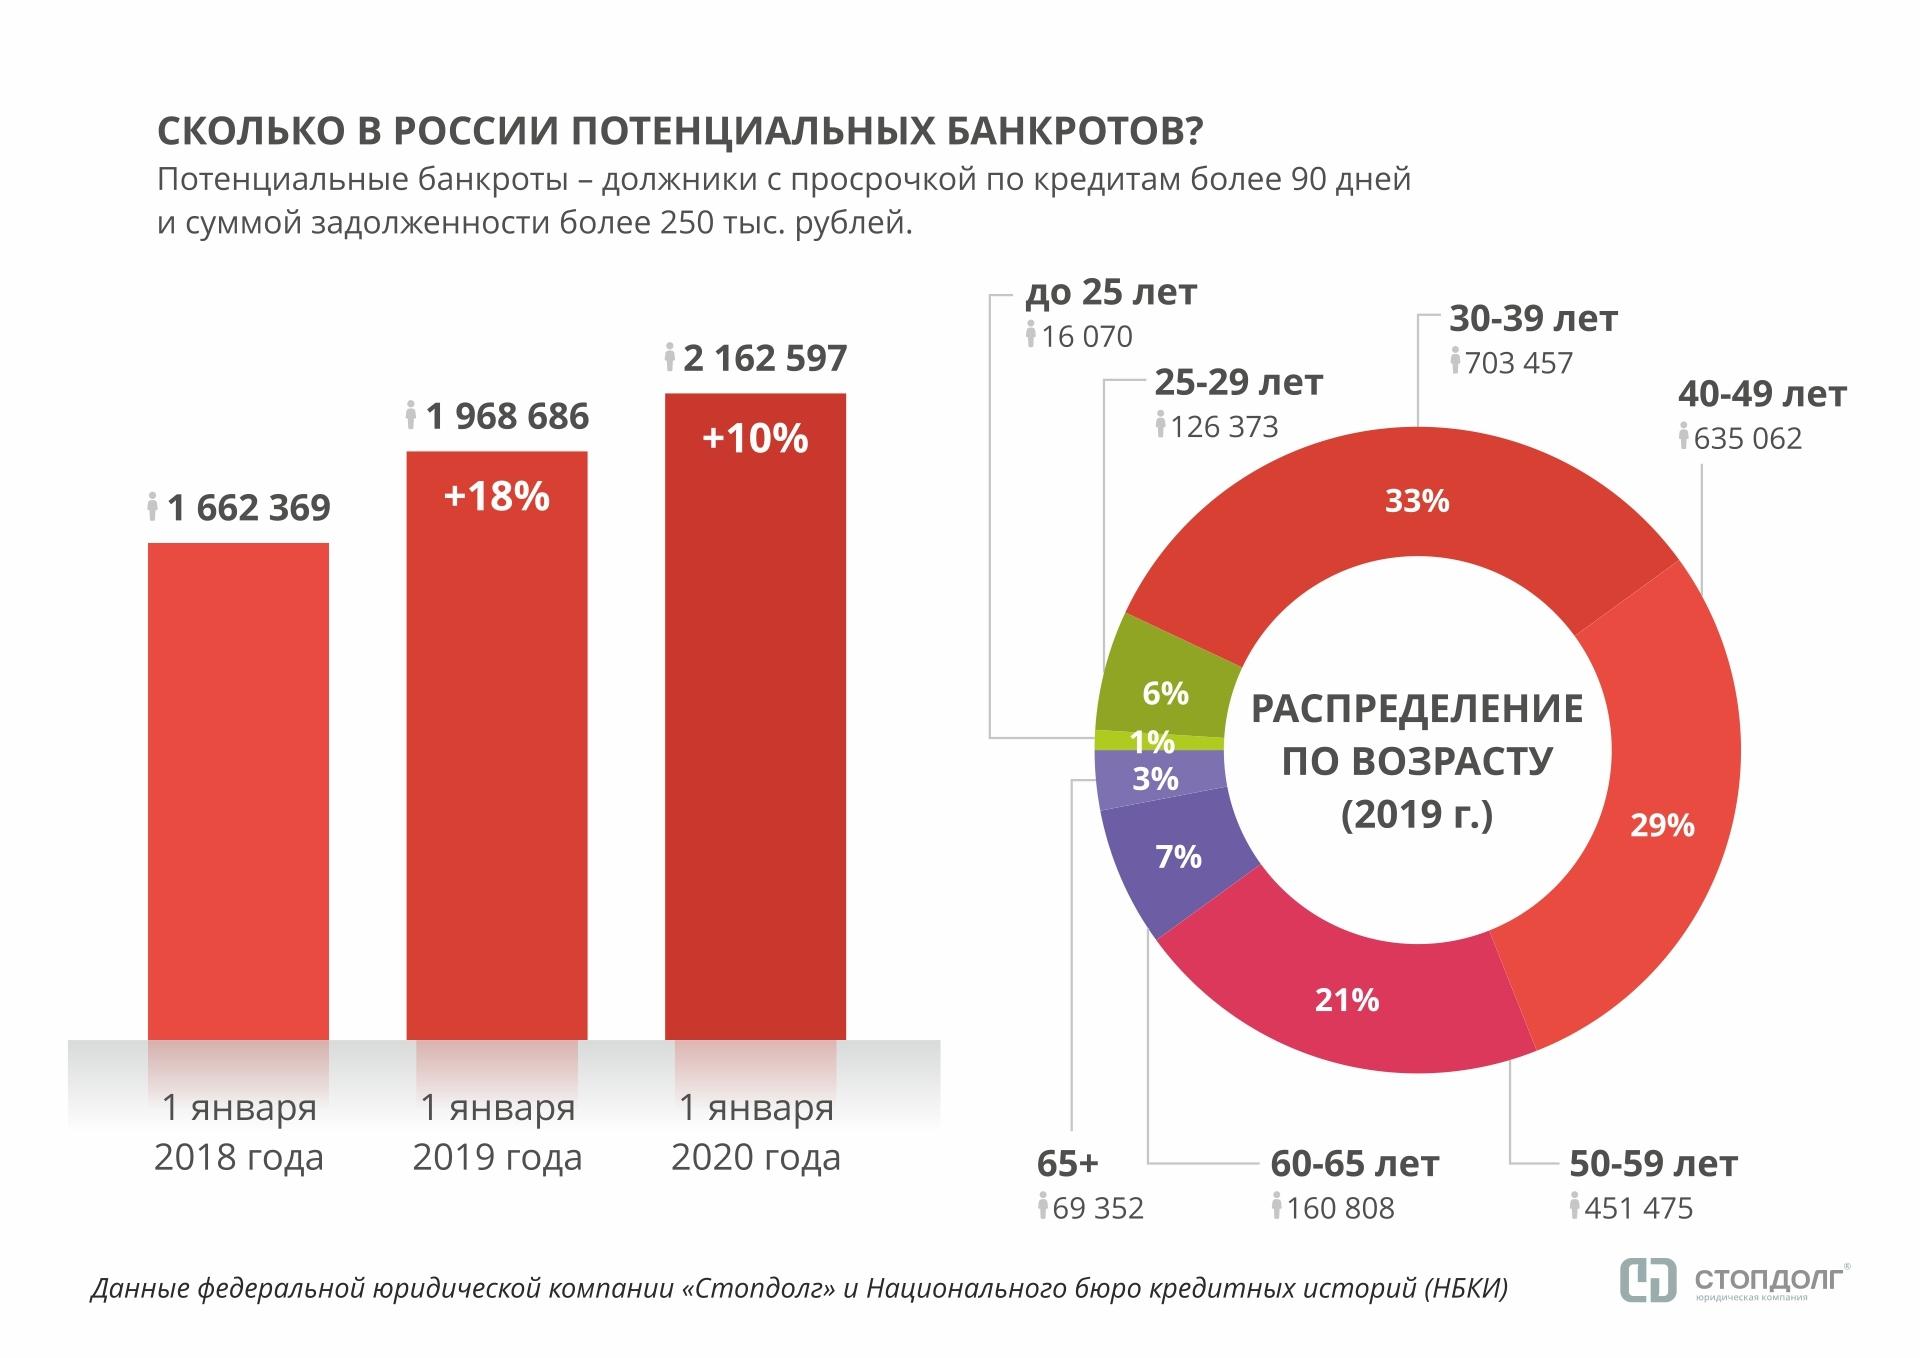 Стопдолг: в России стало больше «финансовых зомби» - рис.3